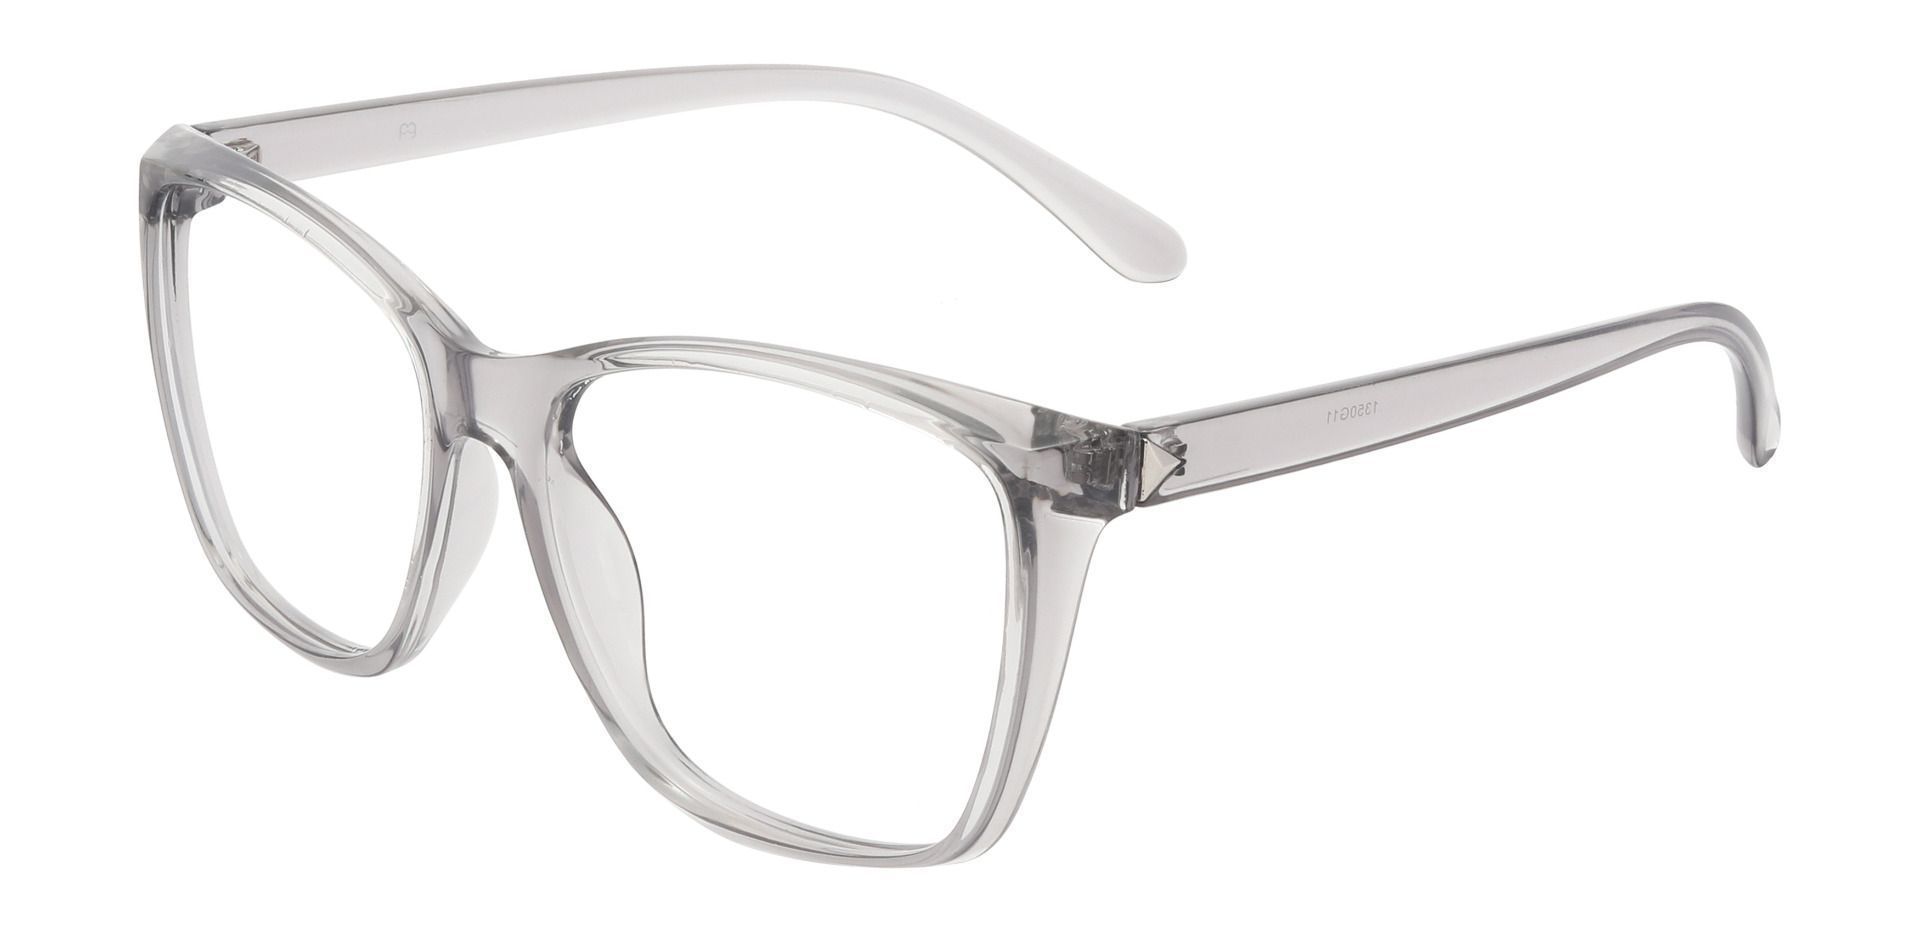 Hickory Square Prescription Glasses - Gray